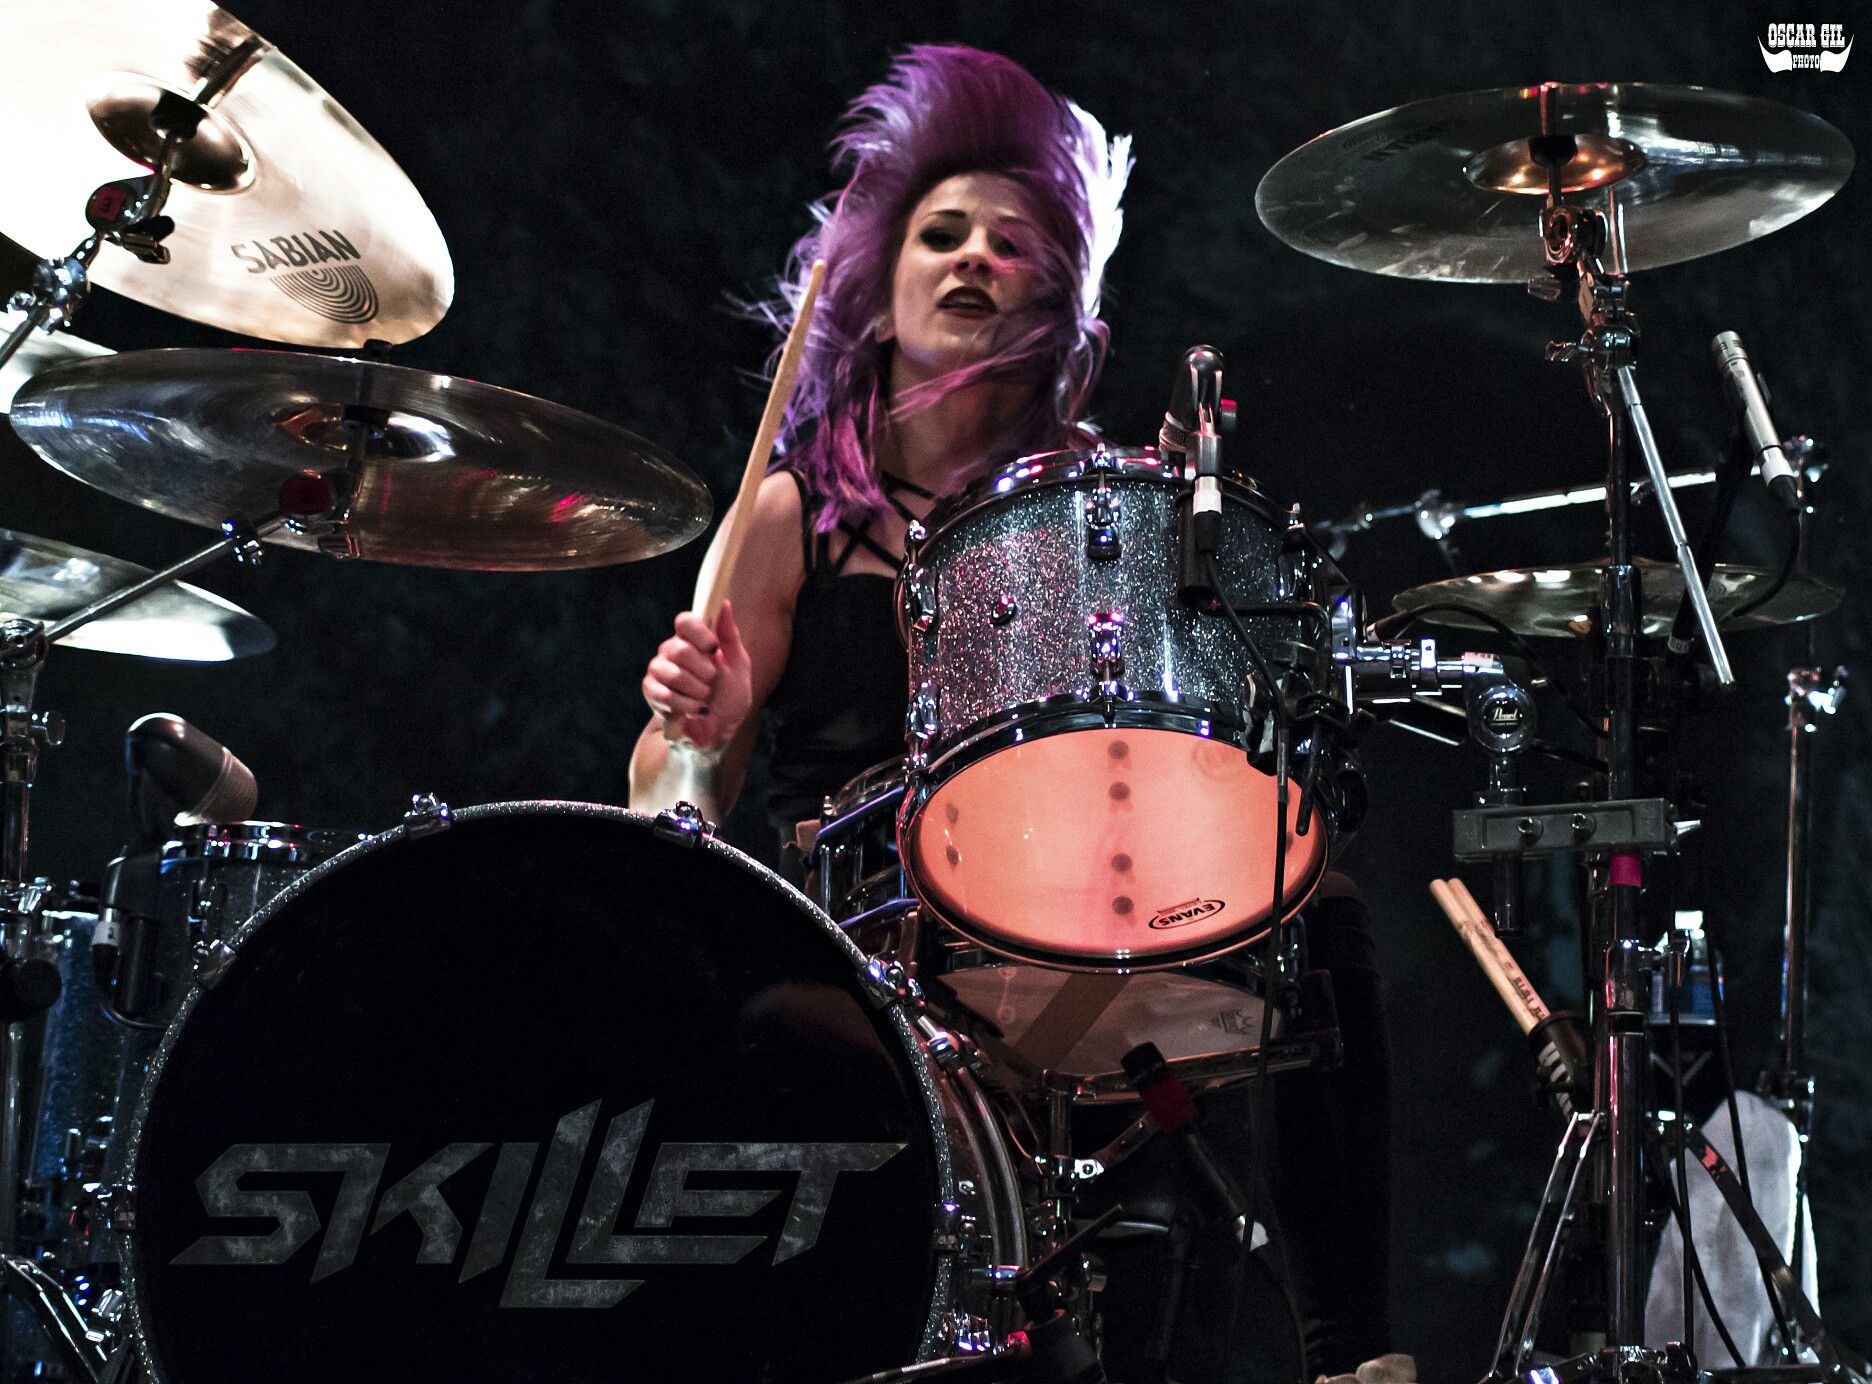 Drummer Jen Ledger (Skillet)